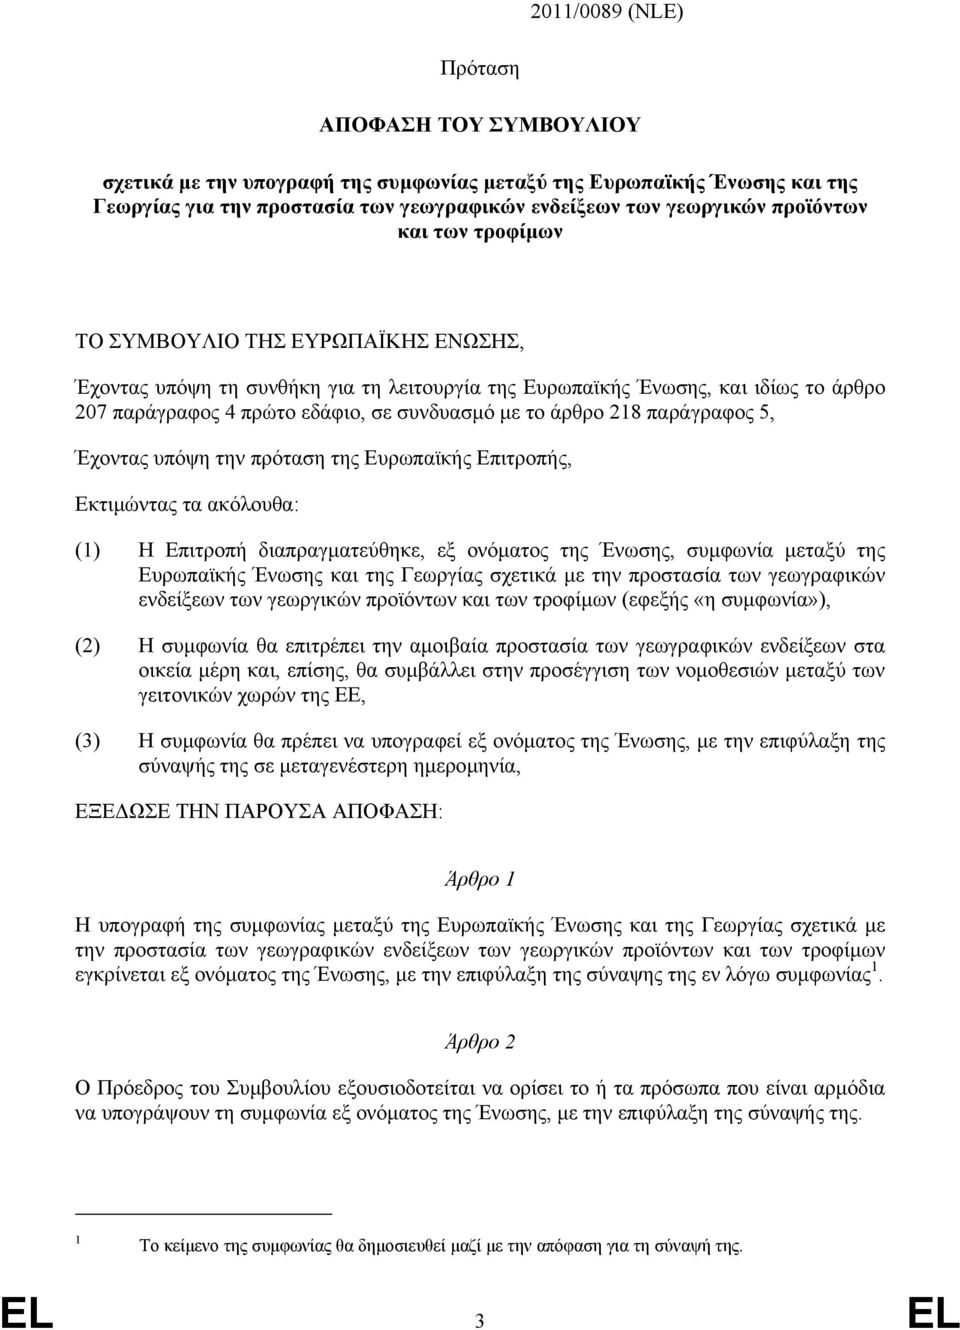 παράγραφος 5, Έχοντας υπόψη την πρόταση της Ευρωπαϊκής Επιτροπής, Εκτιµώντας τα ακόλουθα: (1) Η Επιτροπή διαπραγµατεύθηκε, εξ ονόµατος της Ένωσης, συµφωνία µεταξύ της Ευρωπαϊκής Ένωσης και της